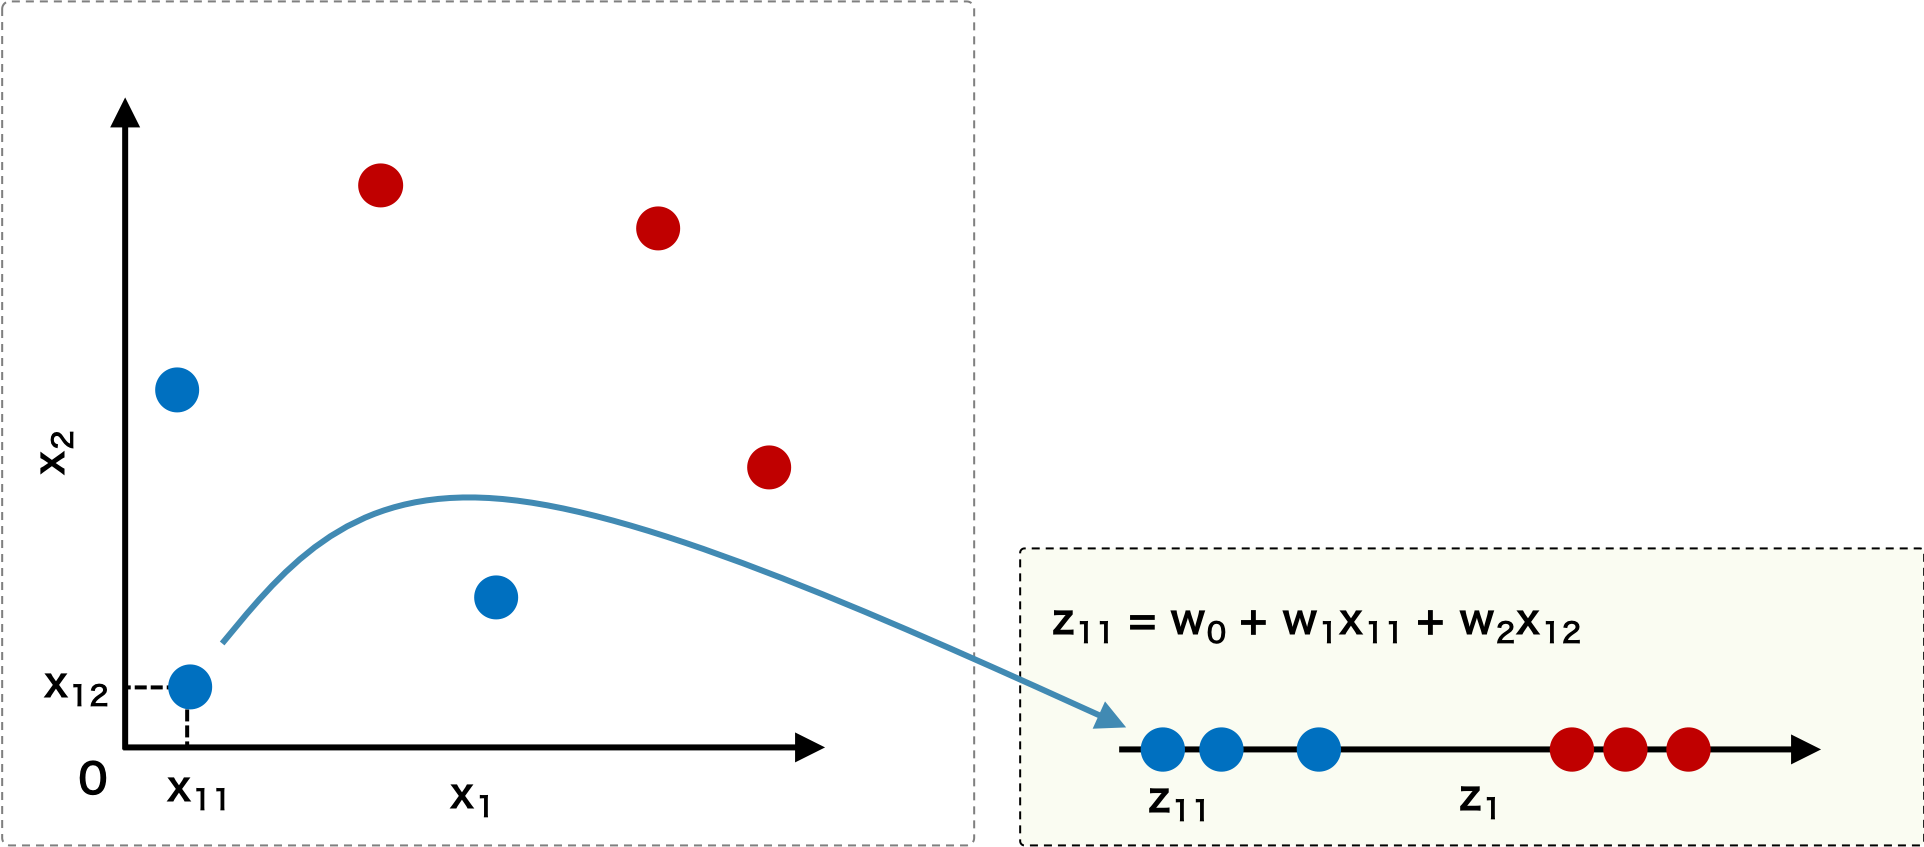 線形判別分析では、データ x にベクトル w をかけて線型写像を行い、写像後の空間においてデータをもっとも分離できるような w を見つける。